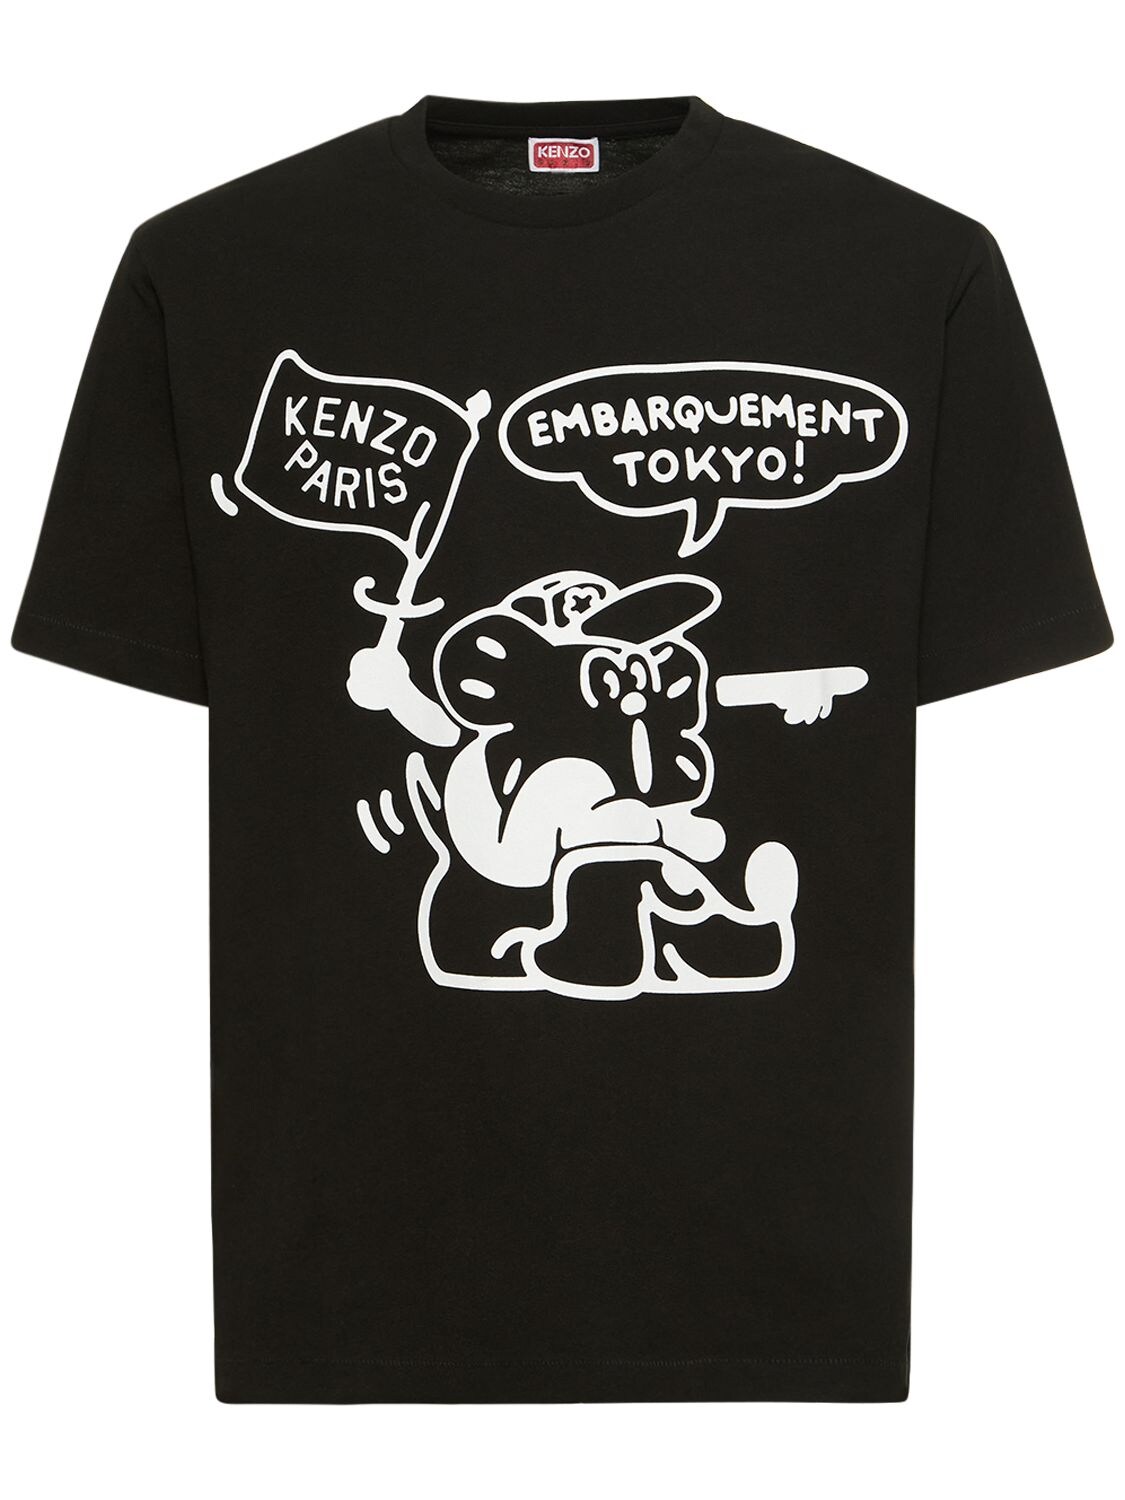 KENZO PARIS Boke Boy Print Jersey T-shirt